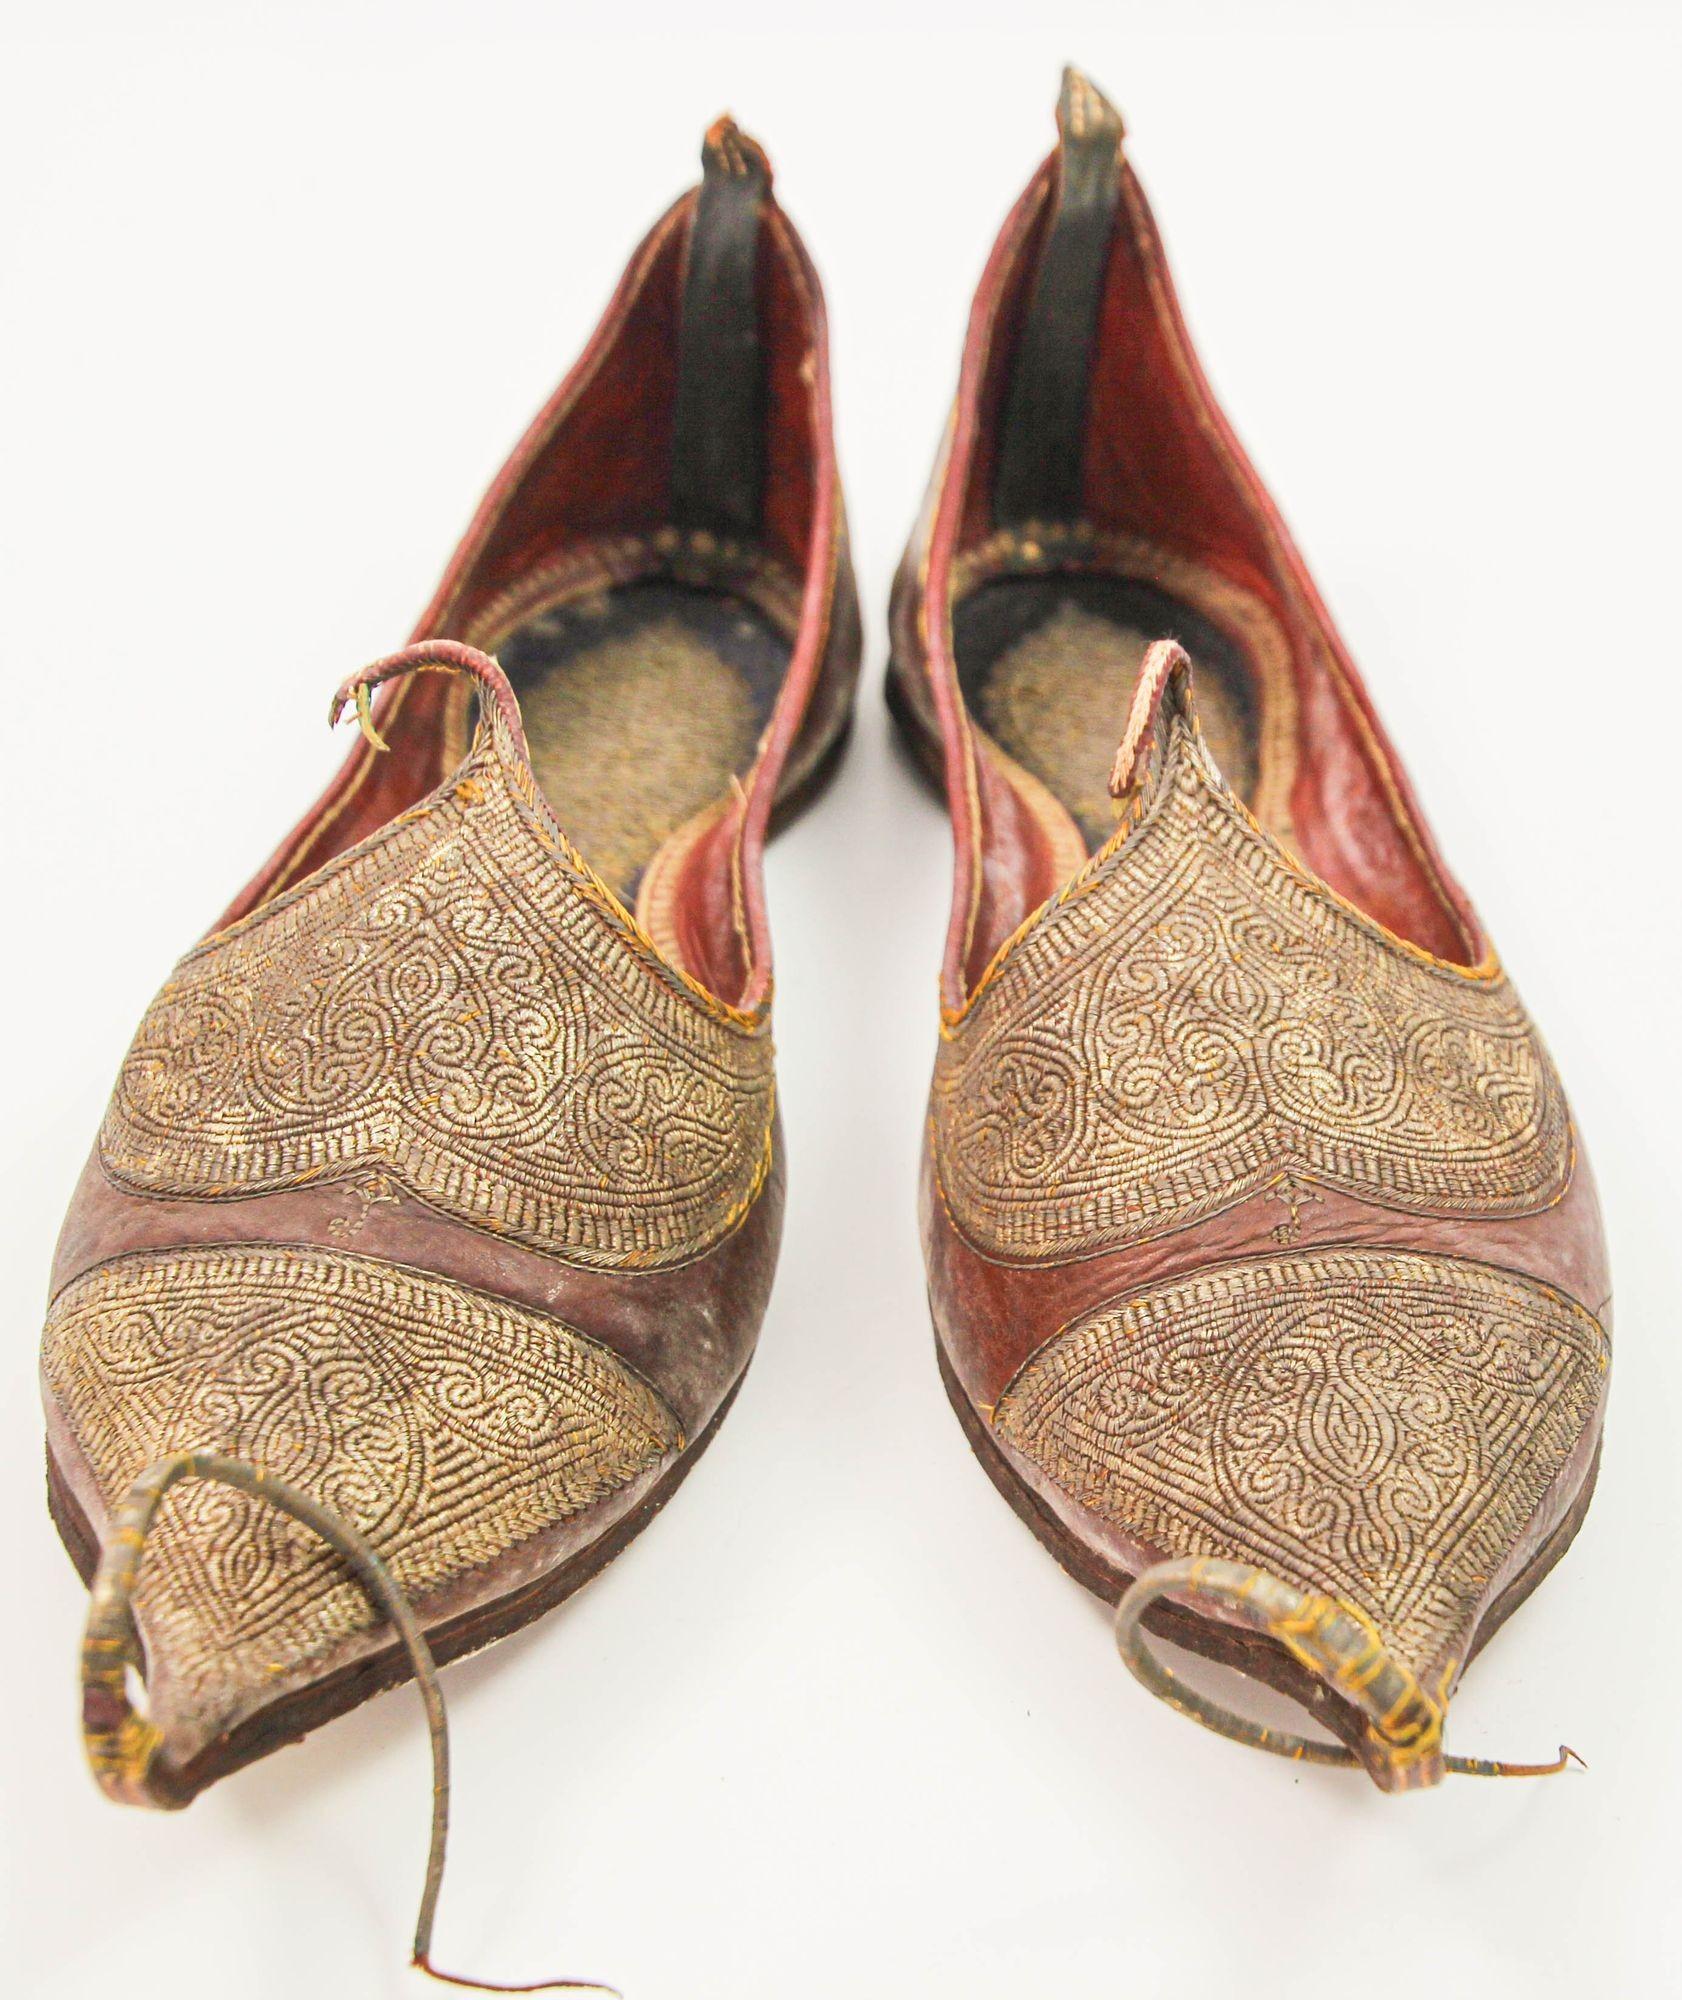 Antike Leder Mughal maurischen türkischen osmanischen Schuhe mit Gold bestickt.
Ein Paar seltener handgenähter und handgearbeiteter Lederschuhe aus dem späten 19. Jahrhundert, die von Hand mit vergoldeten Metallfäden bestickt sind.
Maße: 11